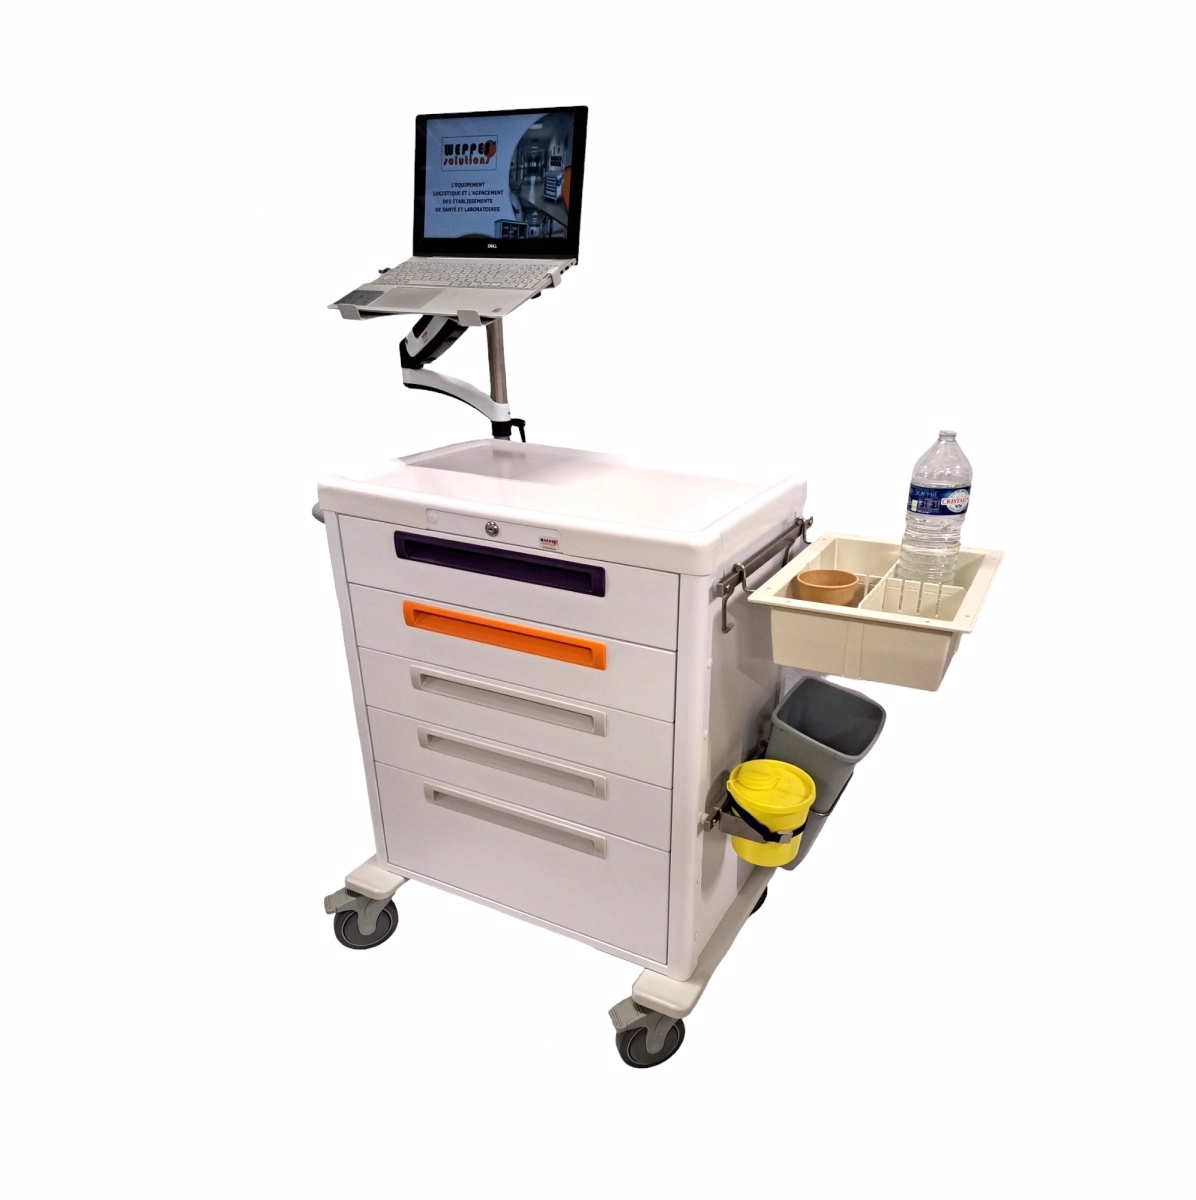 Chariot de soins à tiroirs télescopiques avec support informatique JETCART : La solution idéale pour la distribution de médicaments et les procédures de soins_0